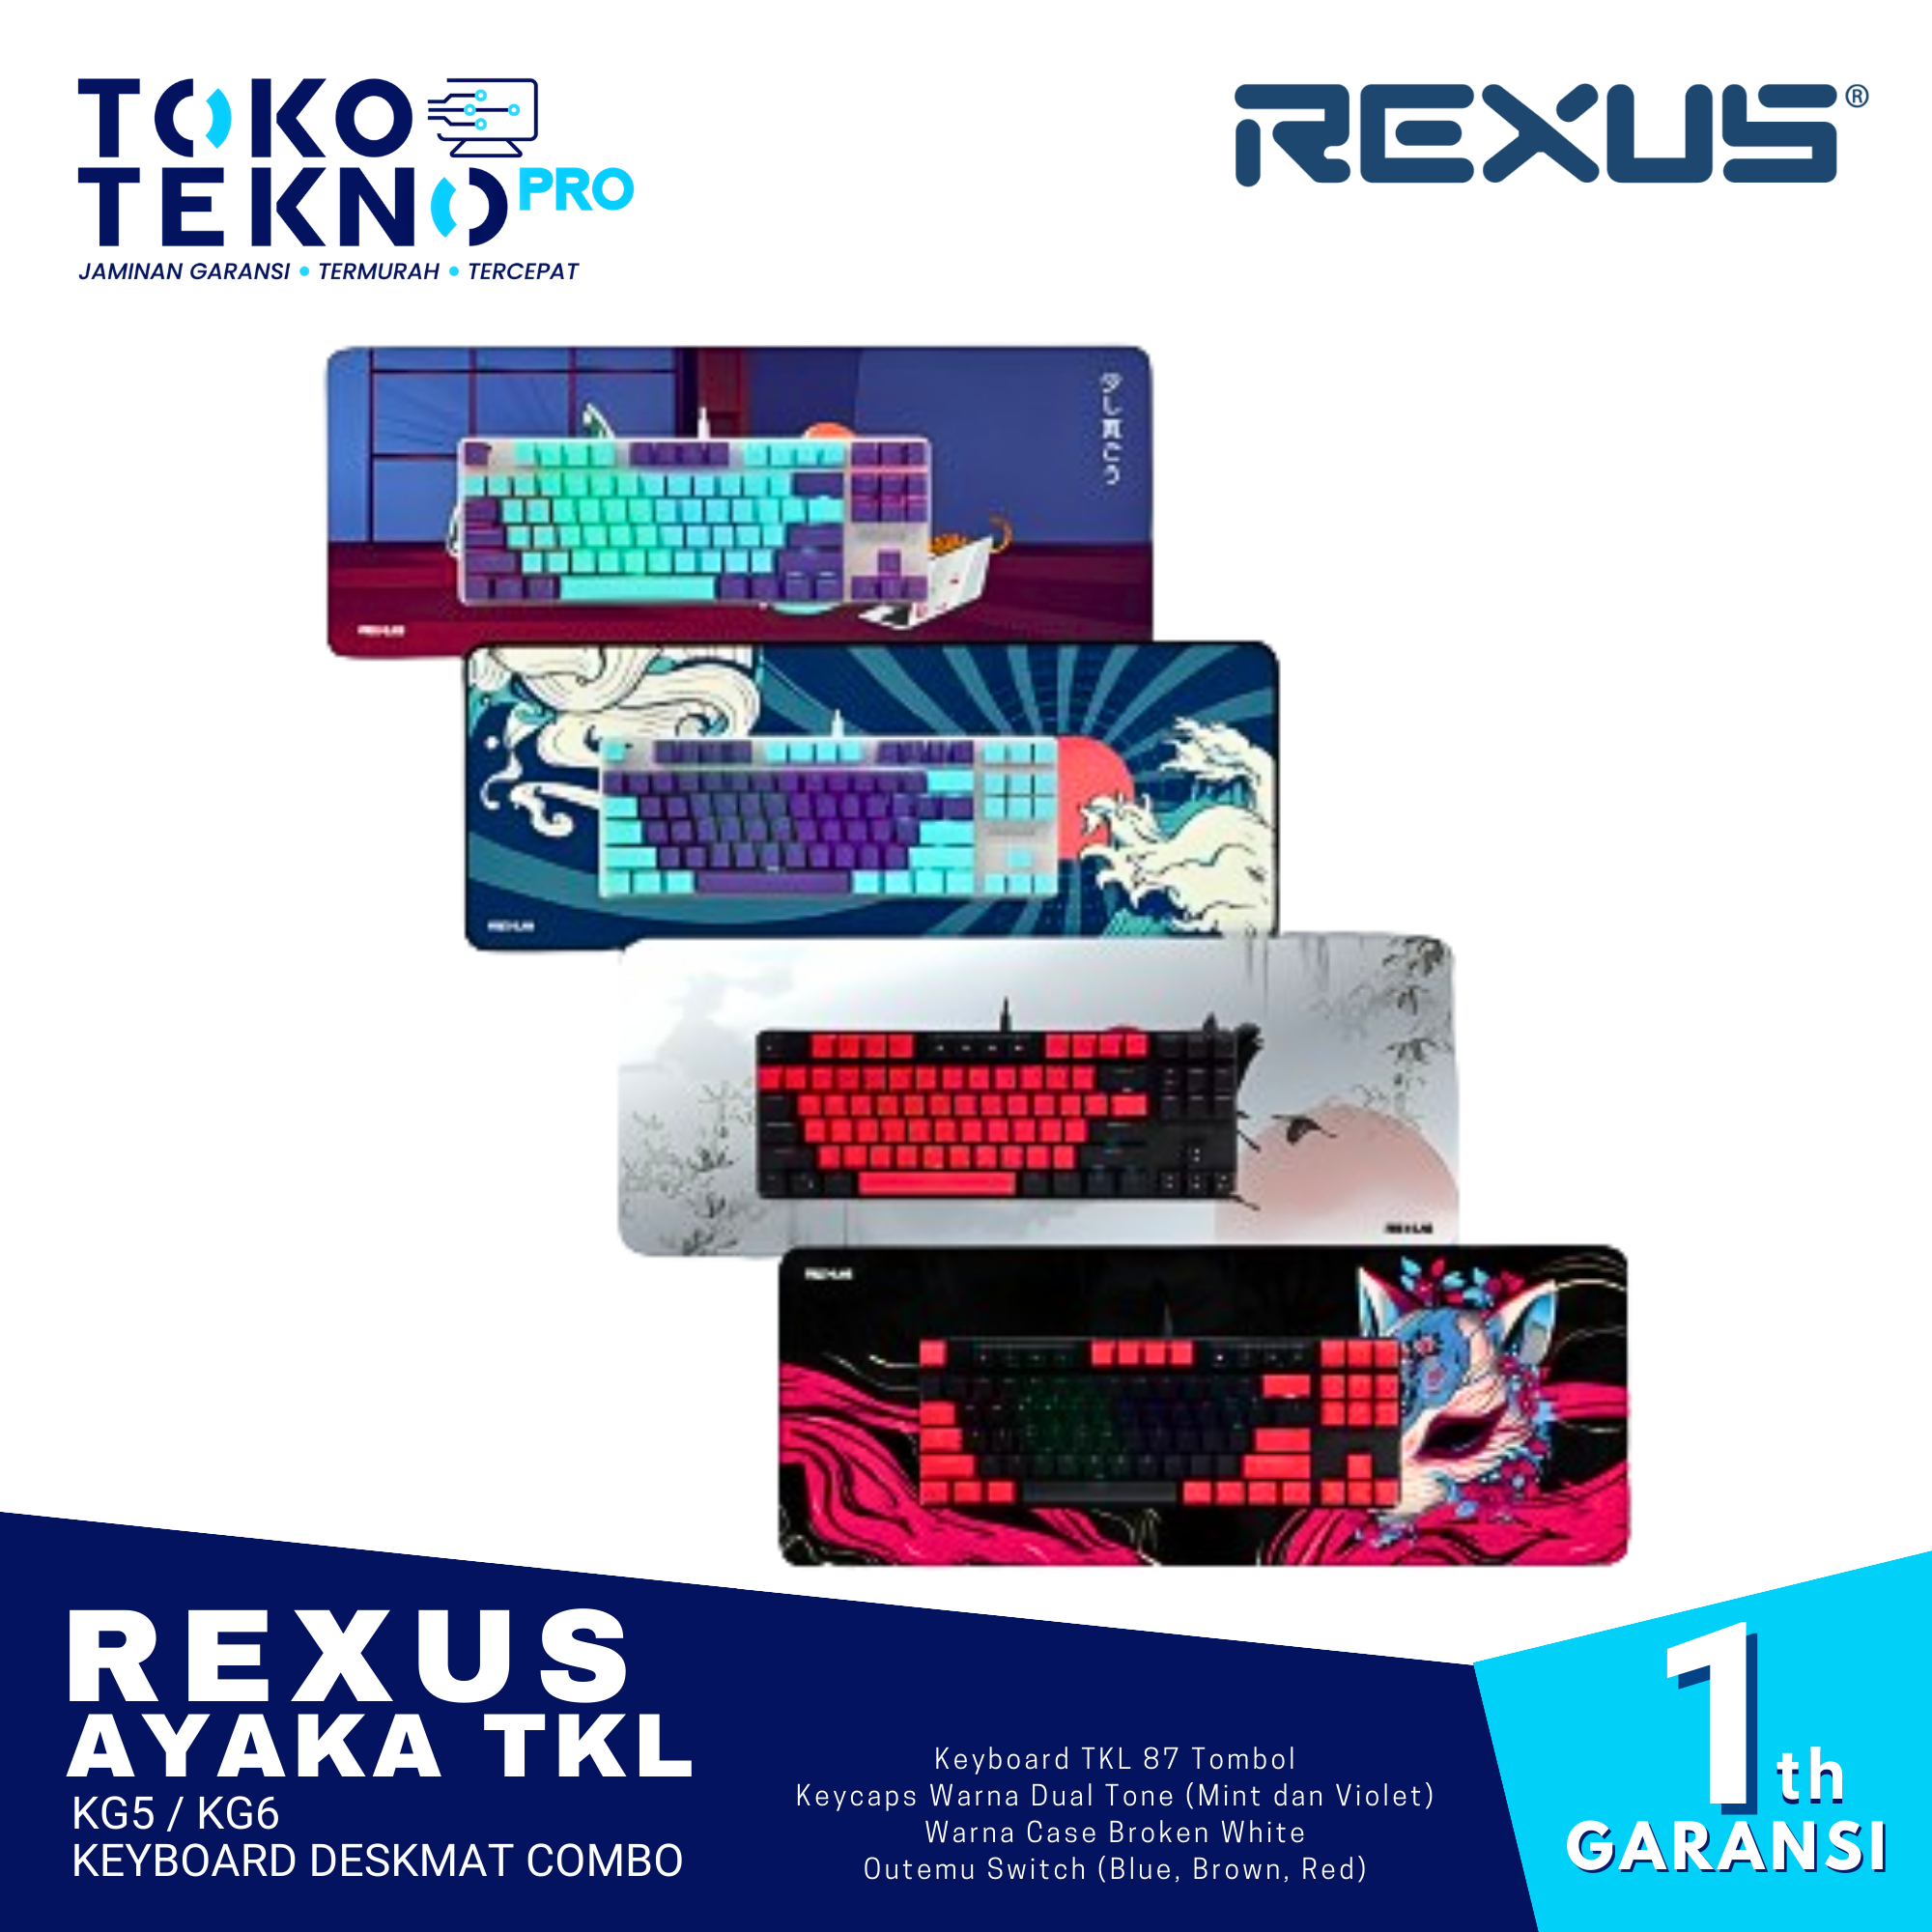 Rexus Ayaka TKL KG5 / KG6 Japanese Theme Keyboard Deskmat Combo Gaming